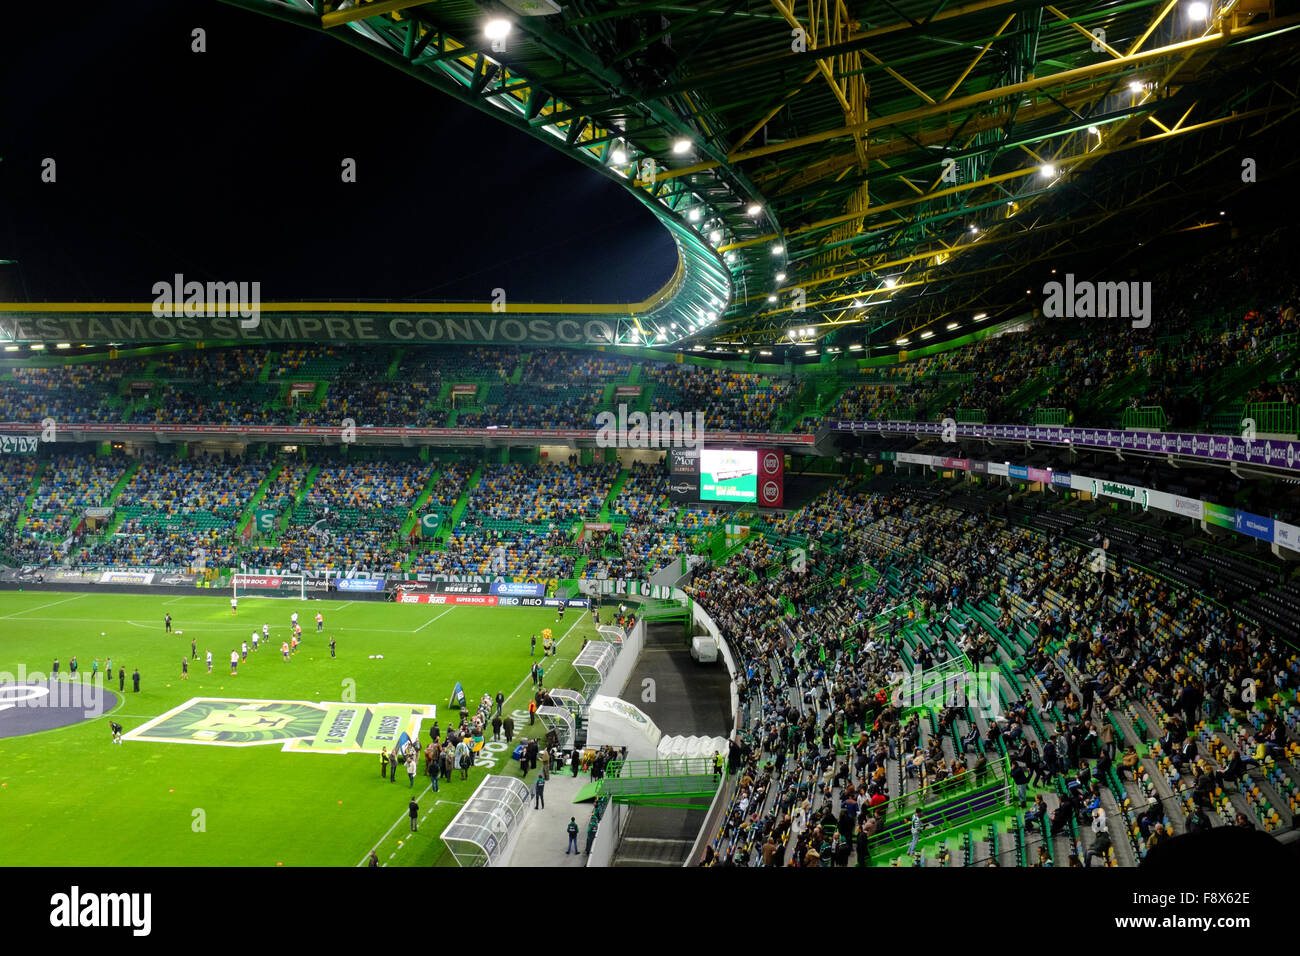 Partido de fútbol de la primera liga portuguesa, el Sporting Clube de Portugal, jugando en el Estádio José Alvalade XXI de Lisboa Foto de stock